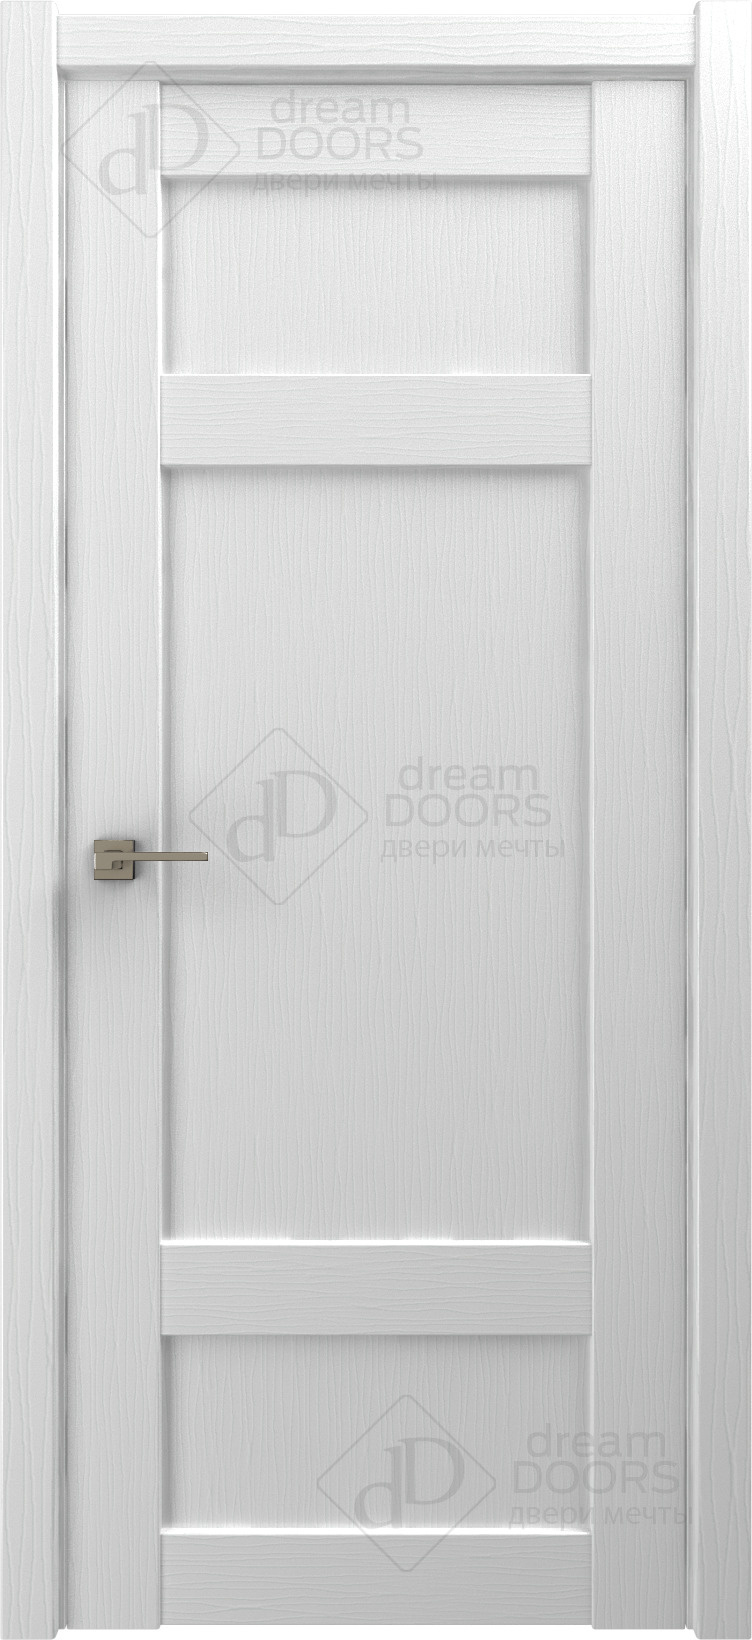 Dream Doors Межкомнатная дверь G22, арт. 18249 - фото №2